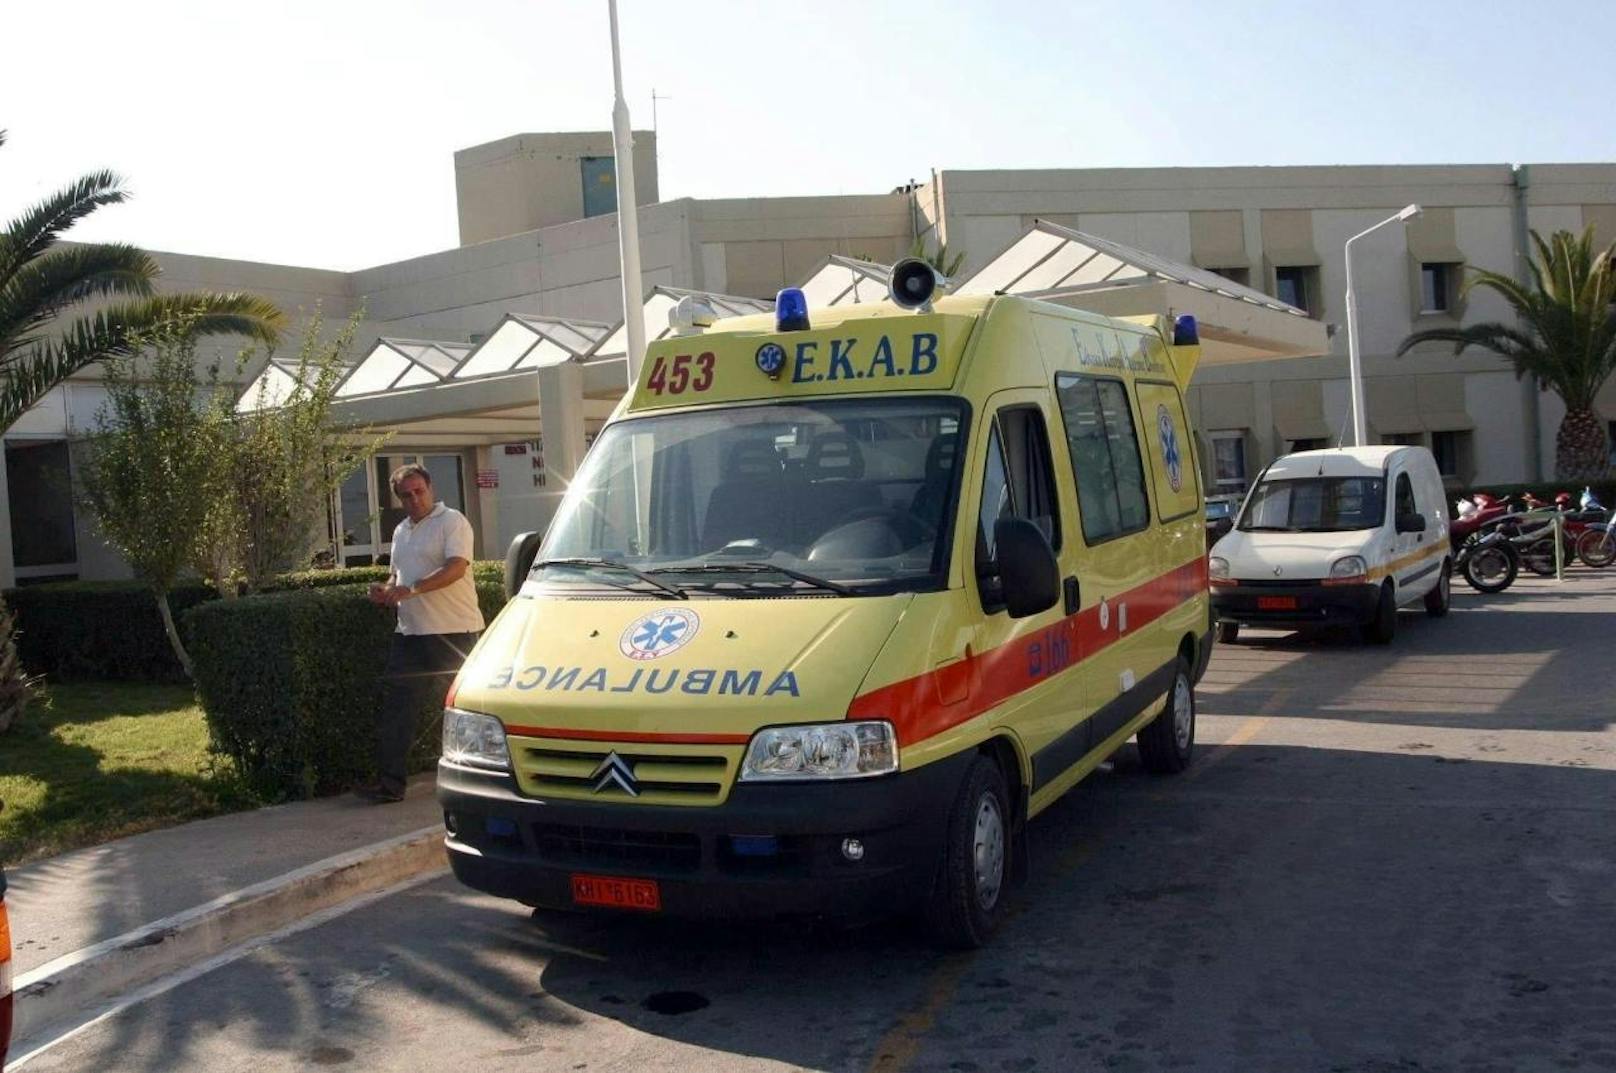 Die griechische Rettung brachte die beiden Verunglückten in ein Krankenhaus, wo nur noch der Tod der beiden jungen Frauen festgestellt werden konnte.